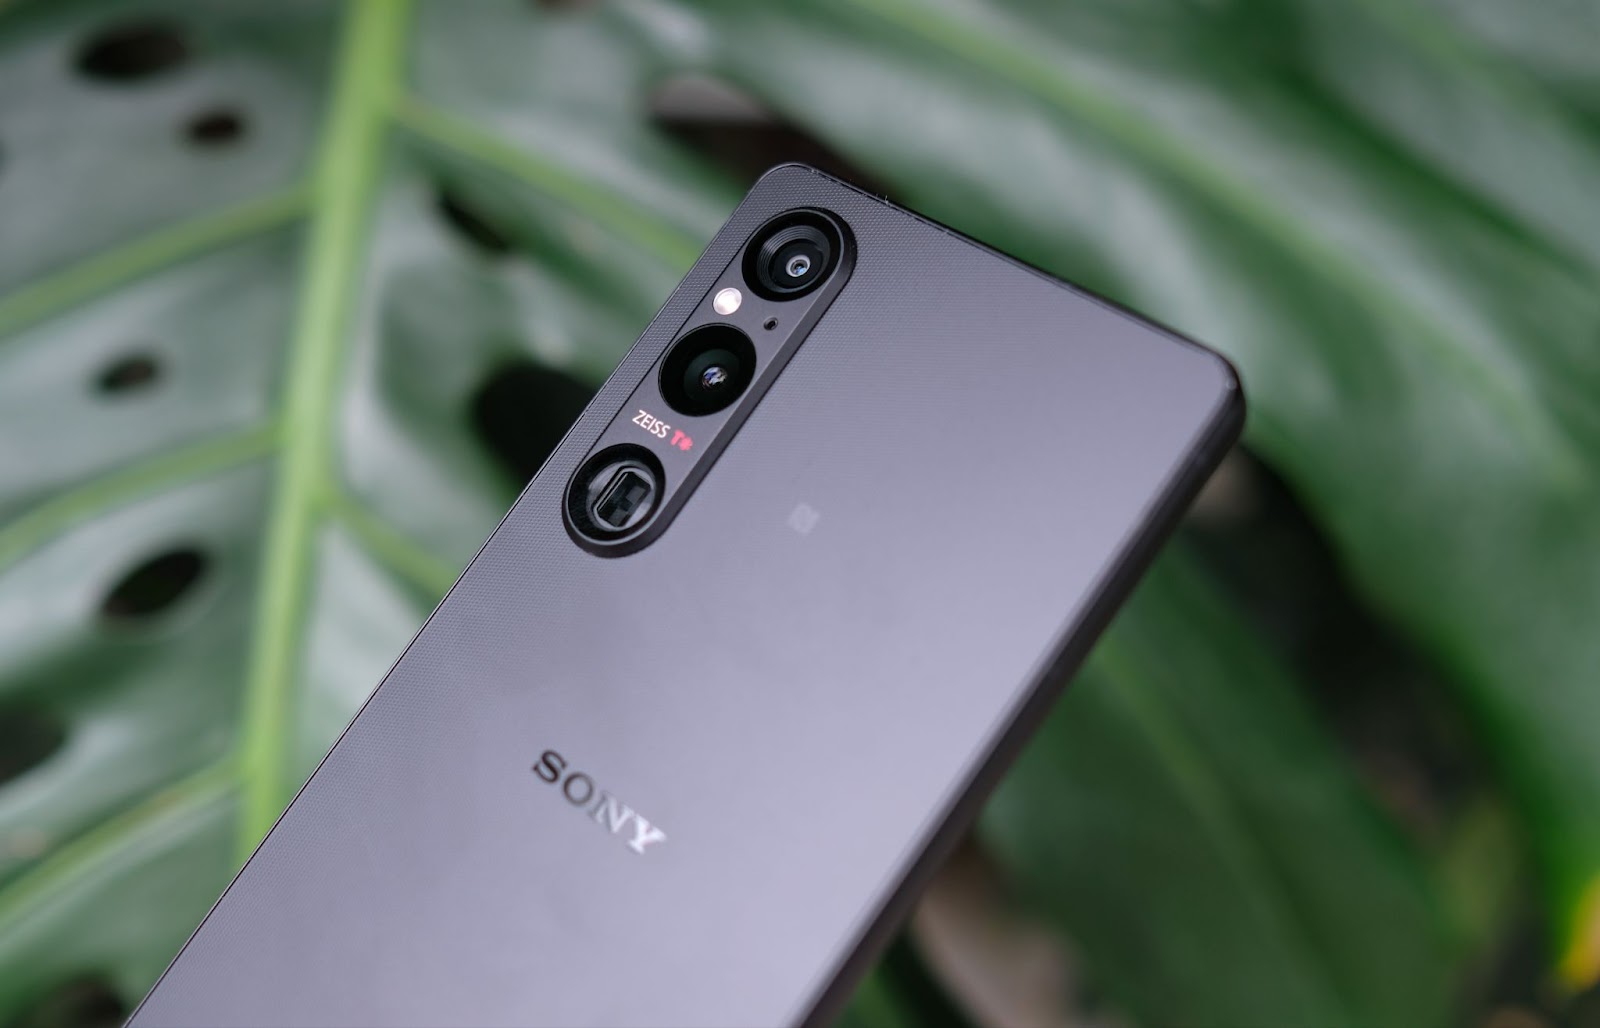 Sony ra mắt Xperia 1 V tại Việt Nam: Tập trung nâng cấp vào camera, giá 36 triệu đồng và không dành cho số đông - Ảnh 3.